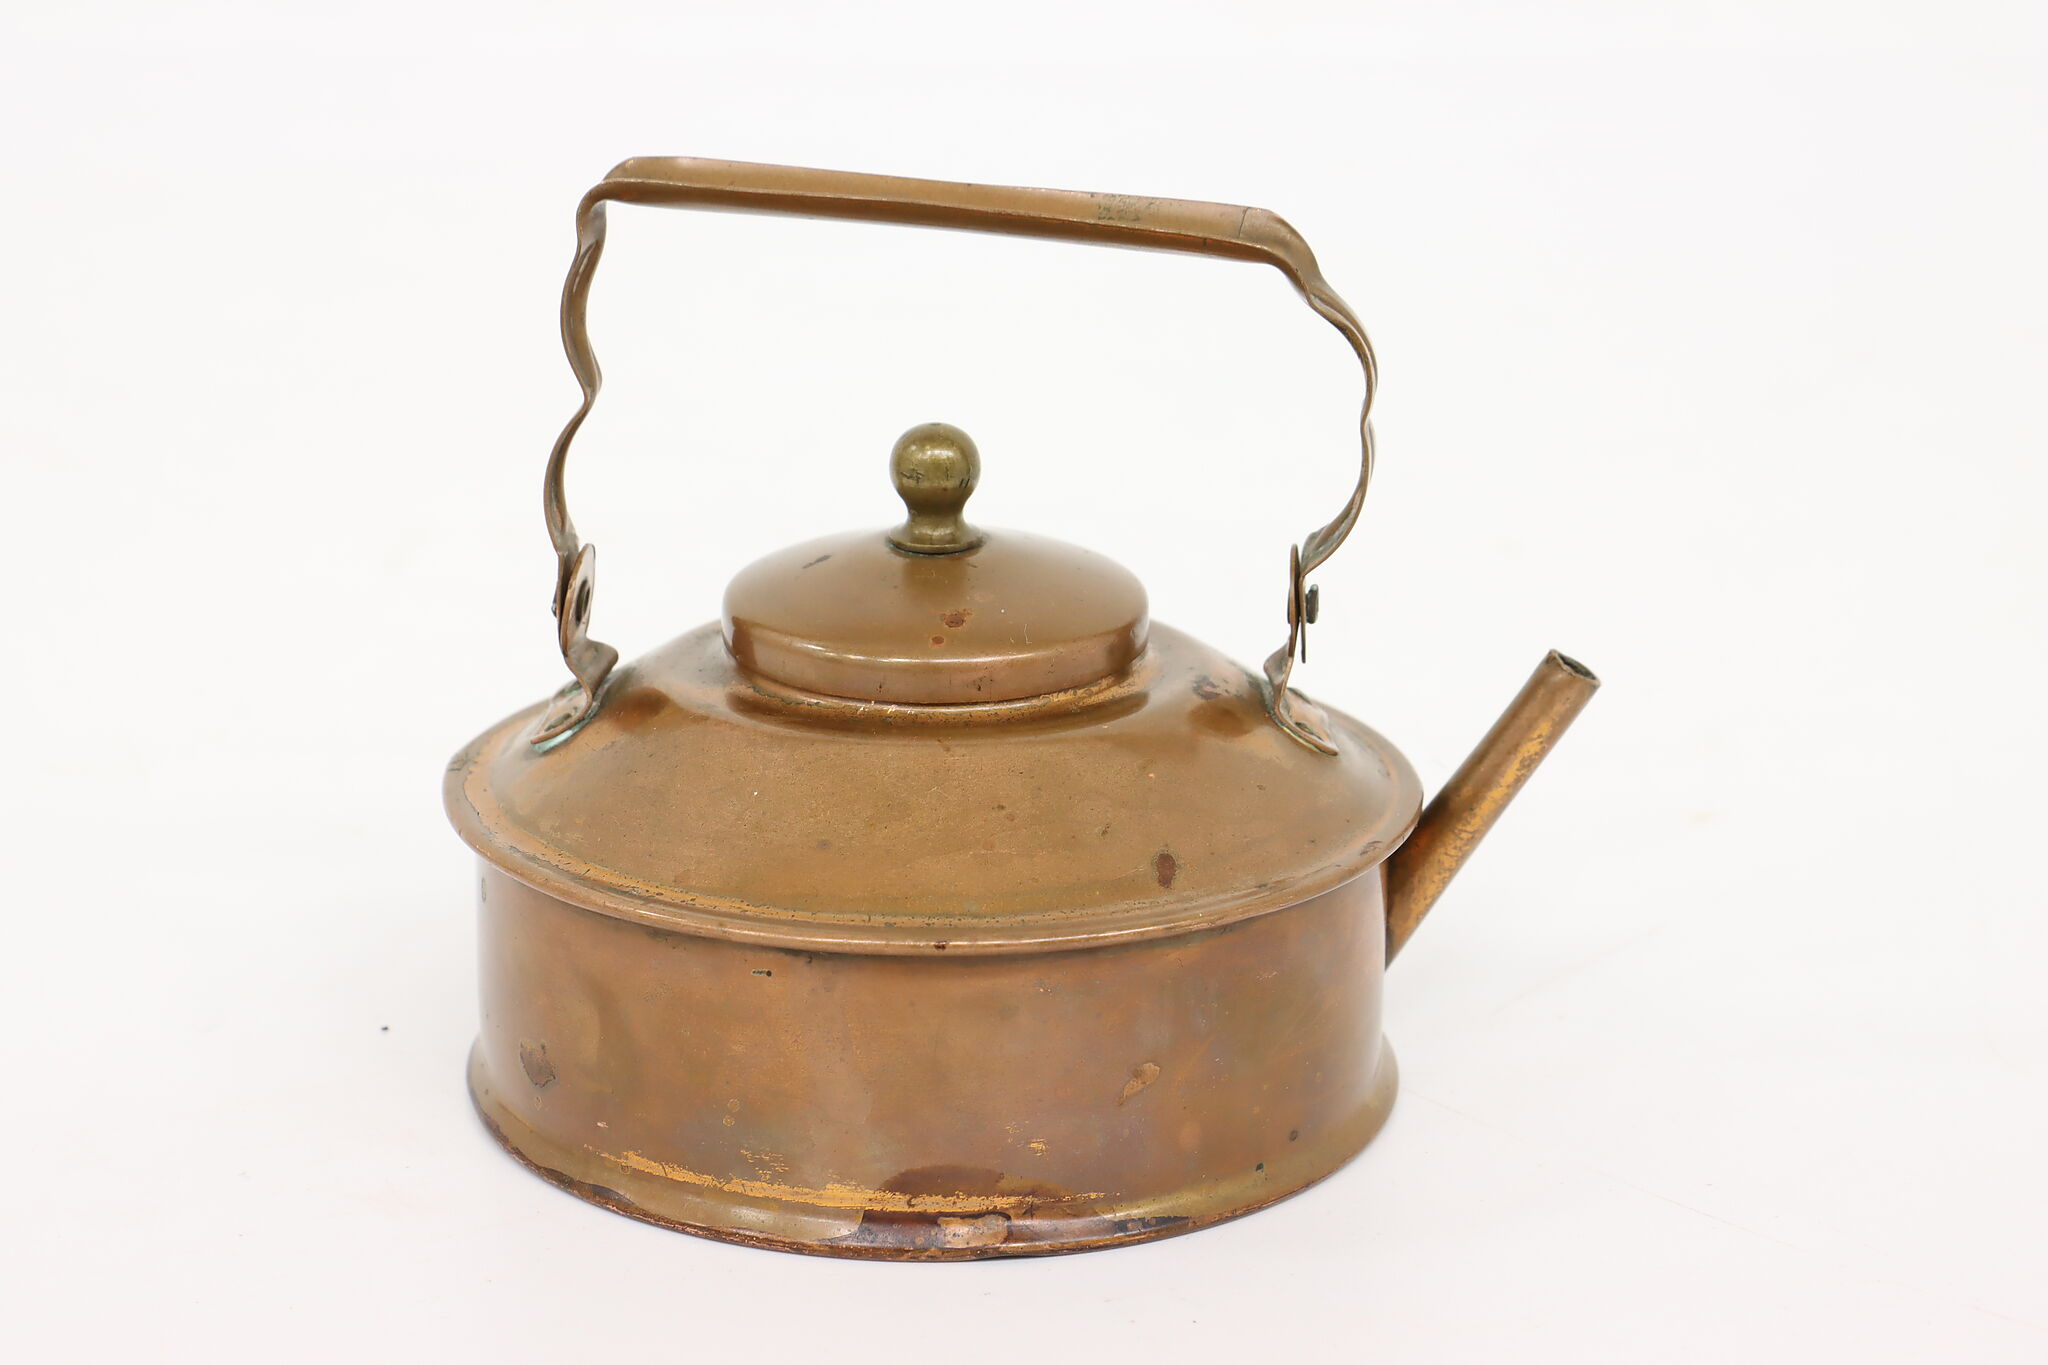 Antique Miniature Copper Teapot Tea Kettle Child's Small Personal Size  Primitive